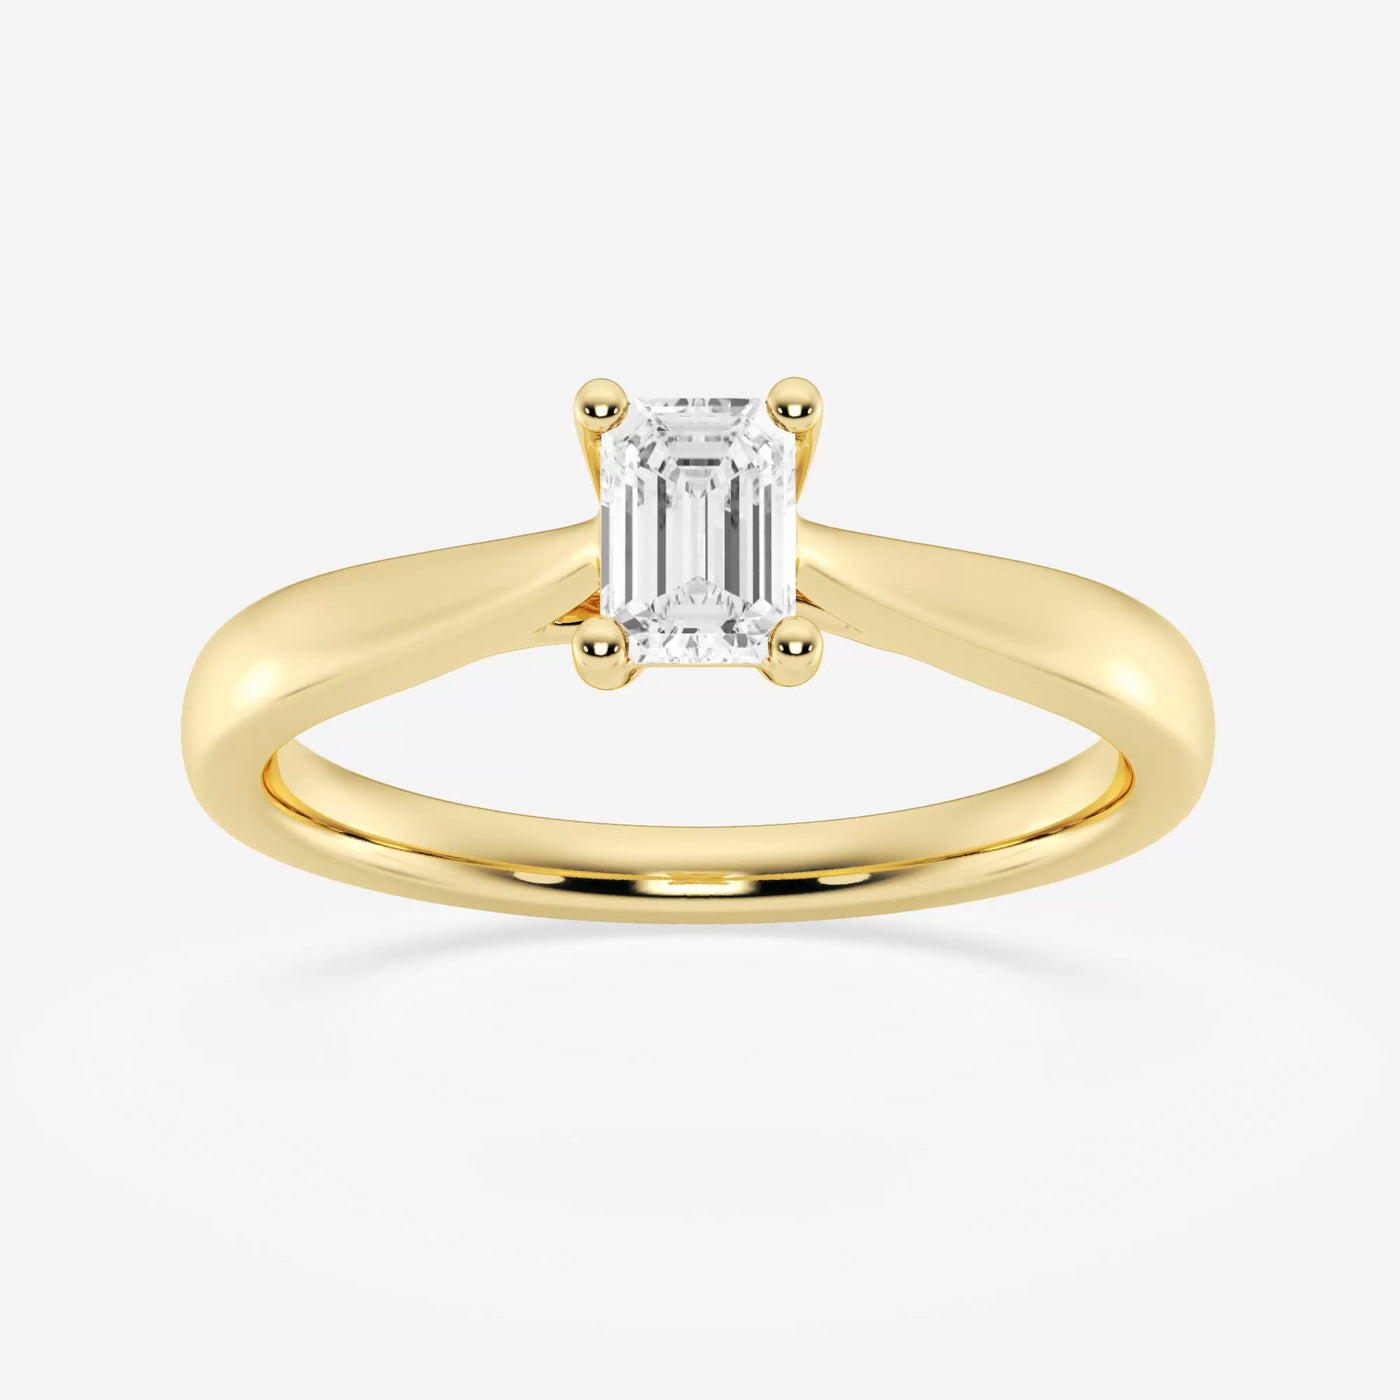 _main_image@SKU:LGD-JOR1092-GY4~#carat_0.50#diamond-quality_fg,-vs2+#metal_18k-yellow-gold